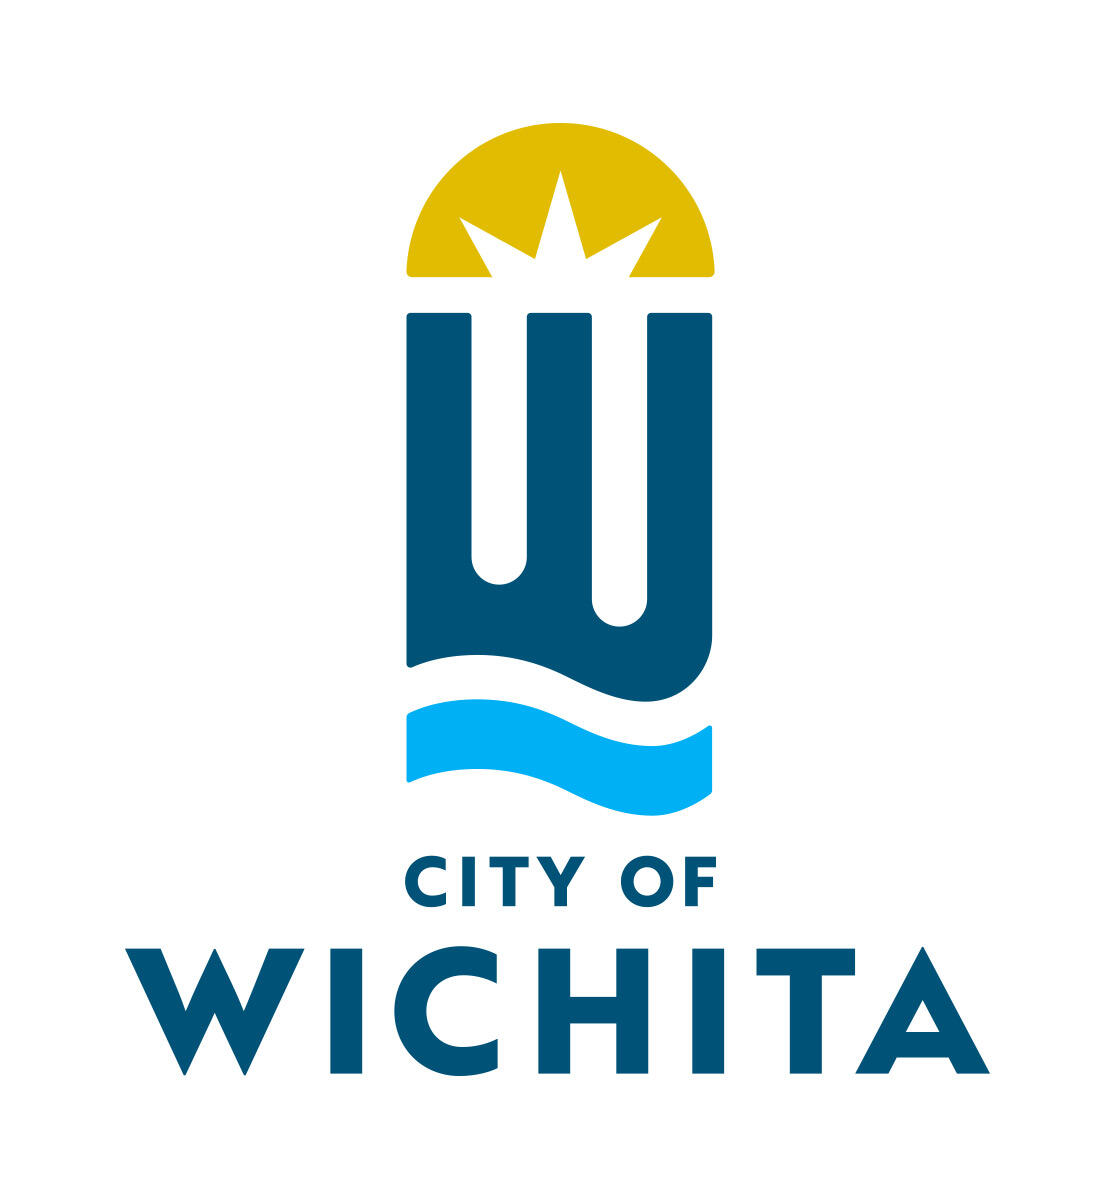 City of Wichita - 1252 updates — Nextdoor — Nextdoor